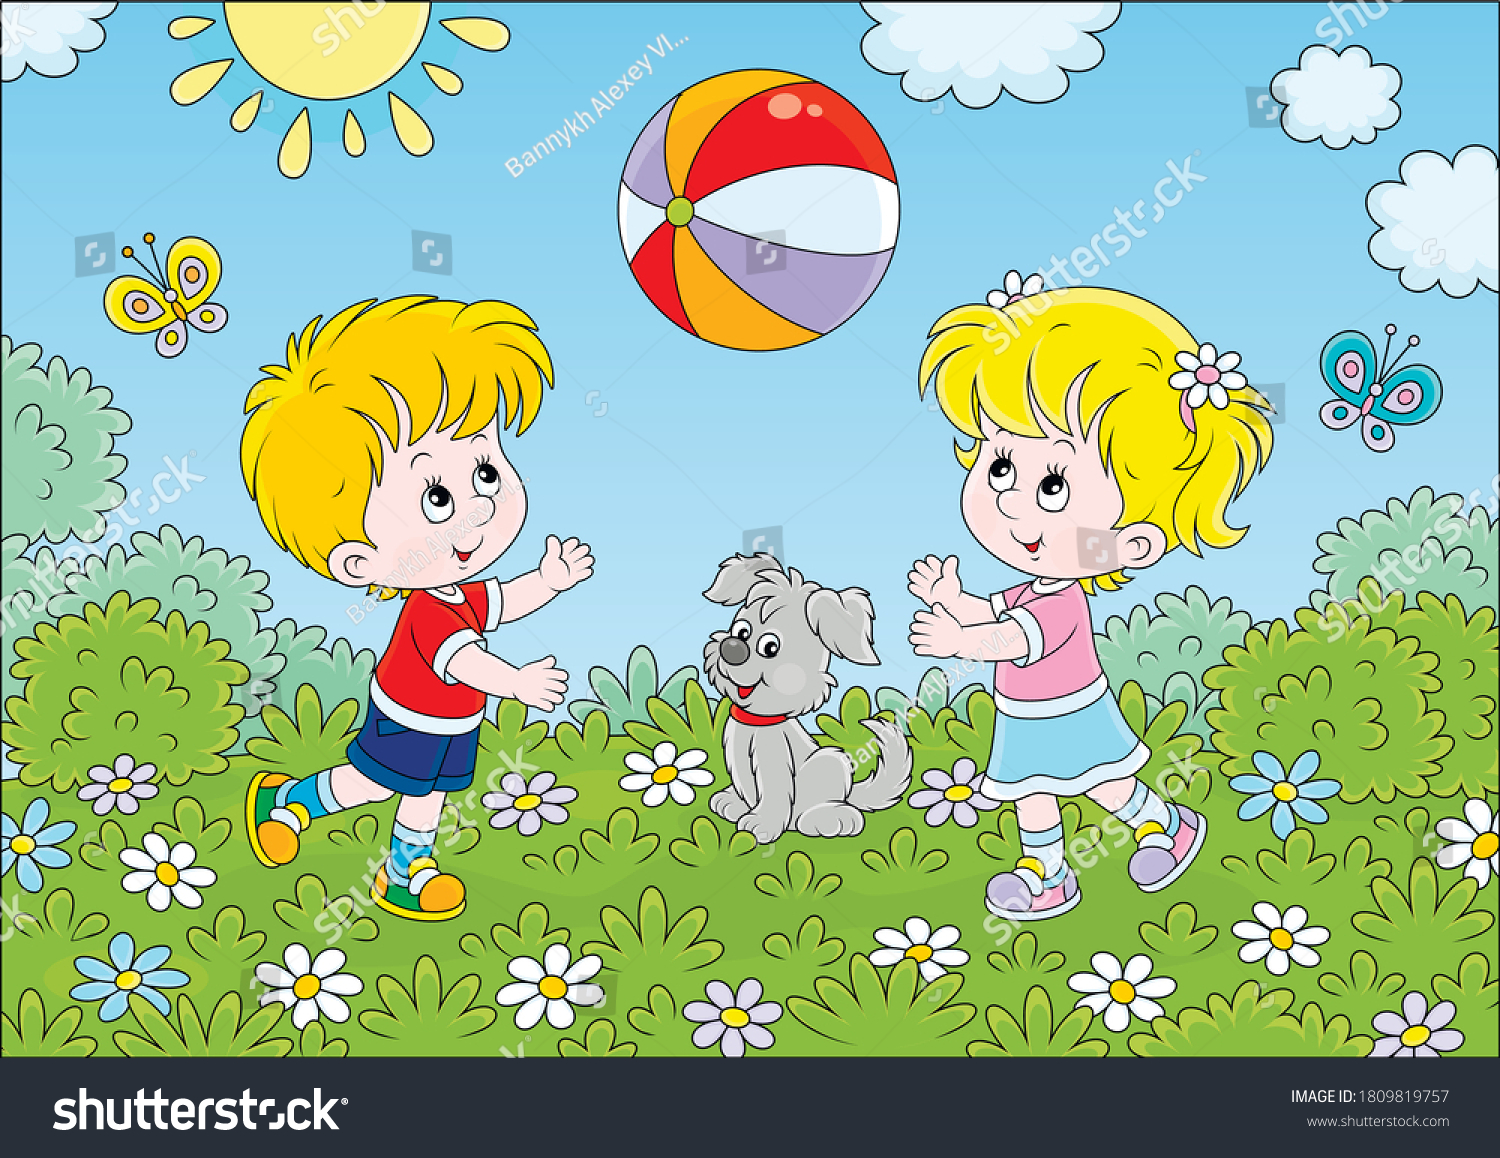 Мальчик и девочка играют в мяч